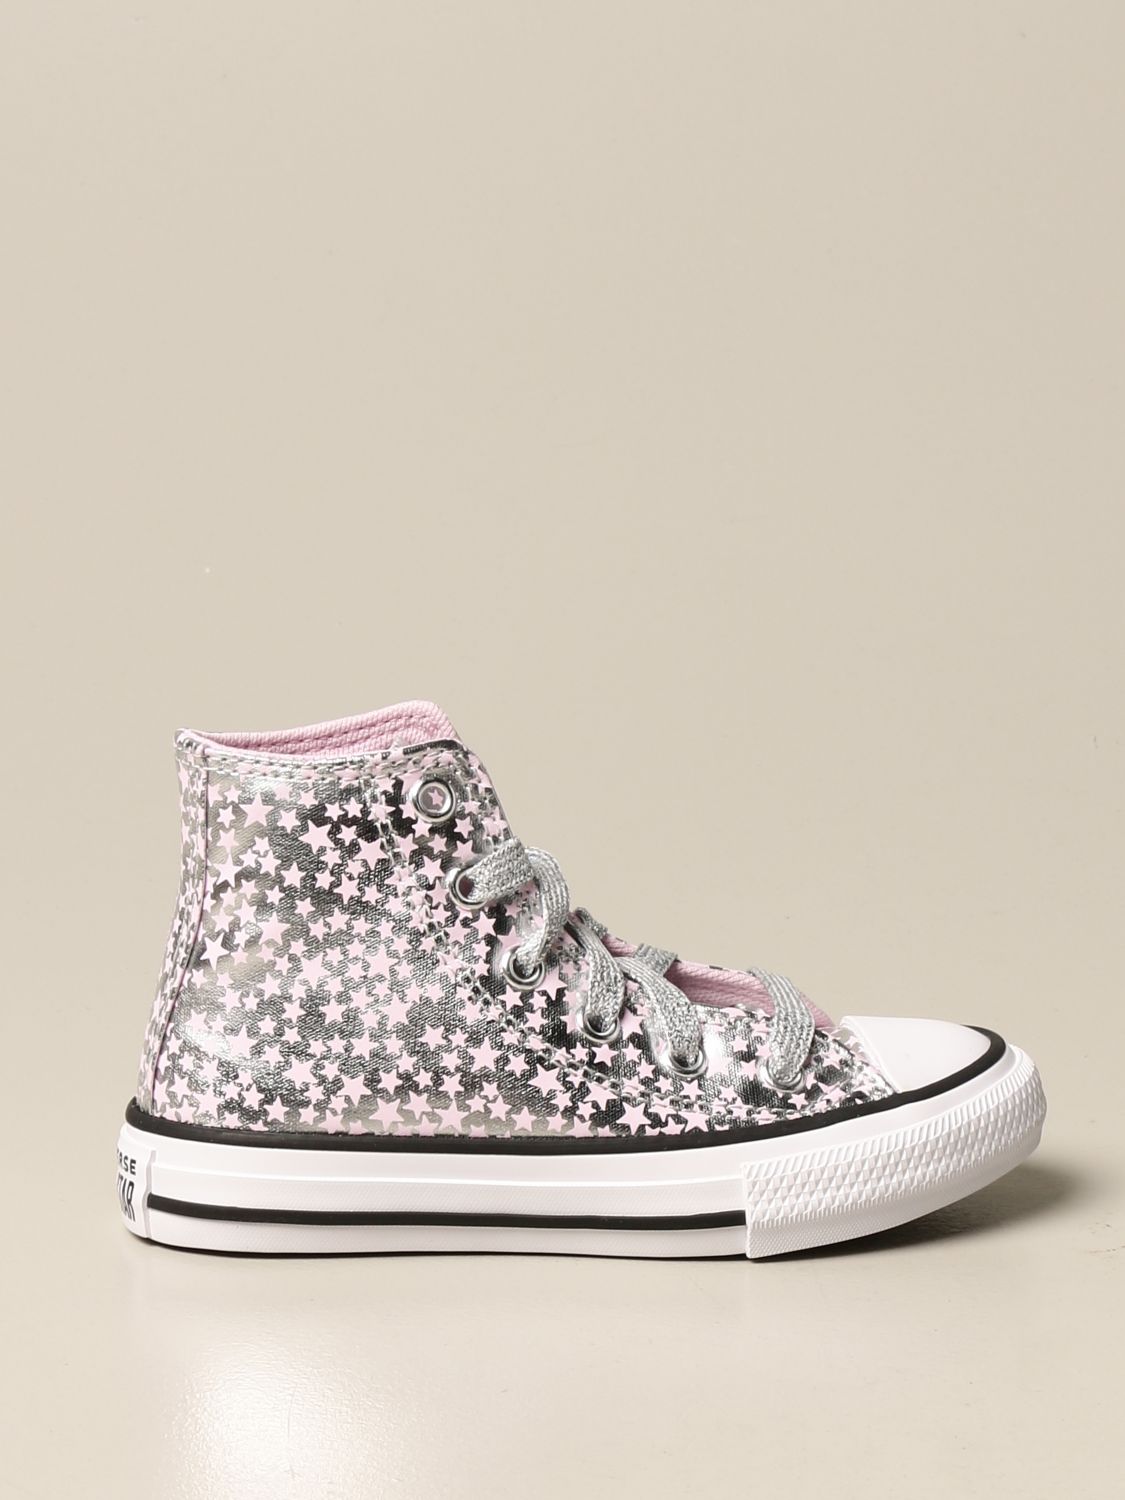 Giglio.com Bambina Scarpe Sneakers Sneakers con glitter Sneakers in tela glitter 